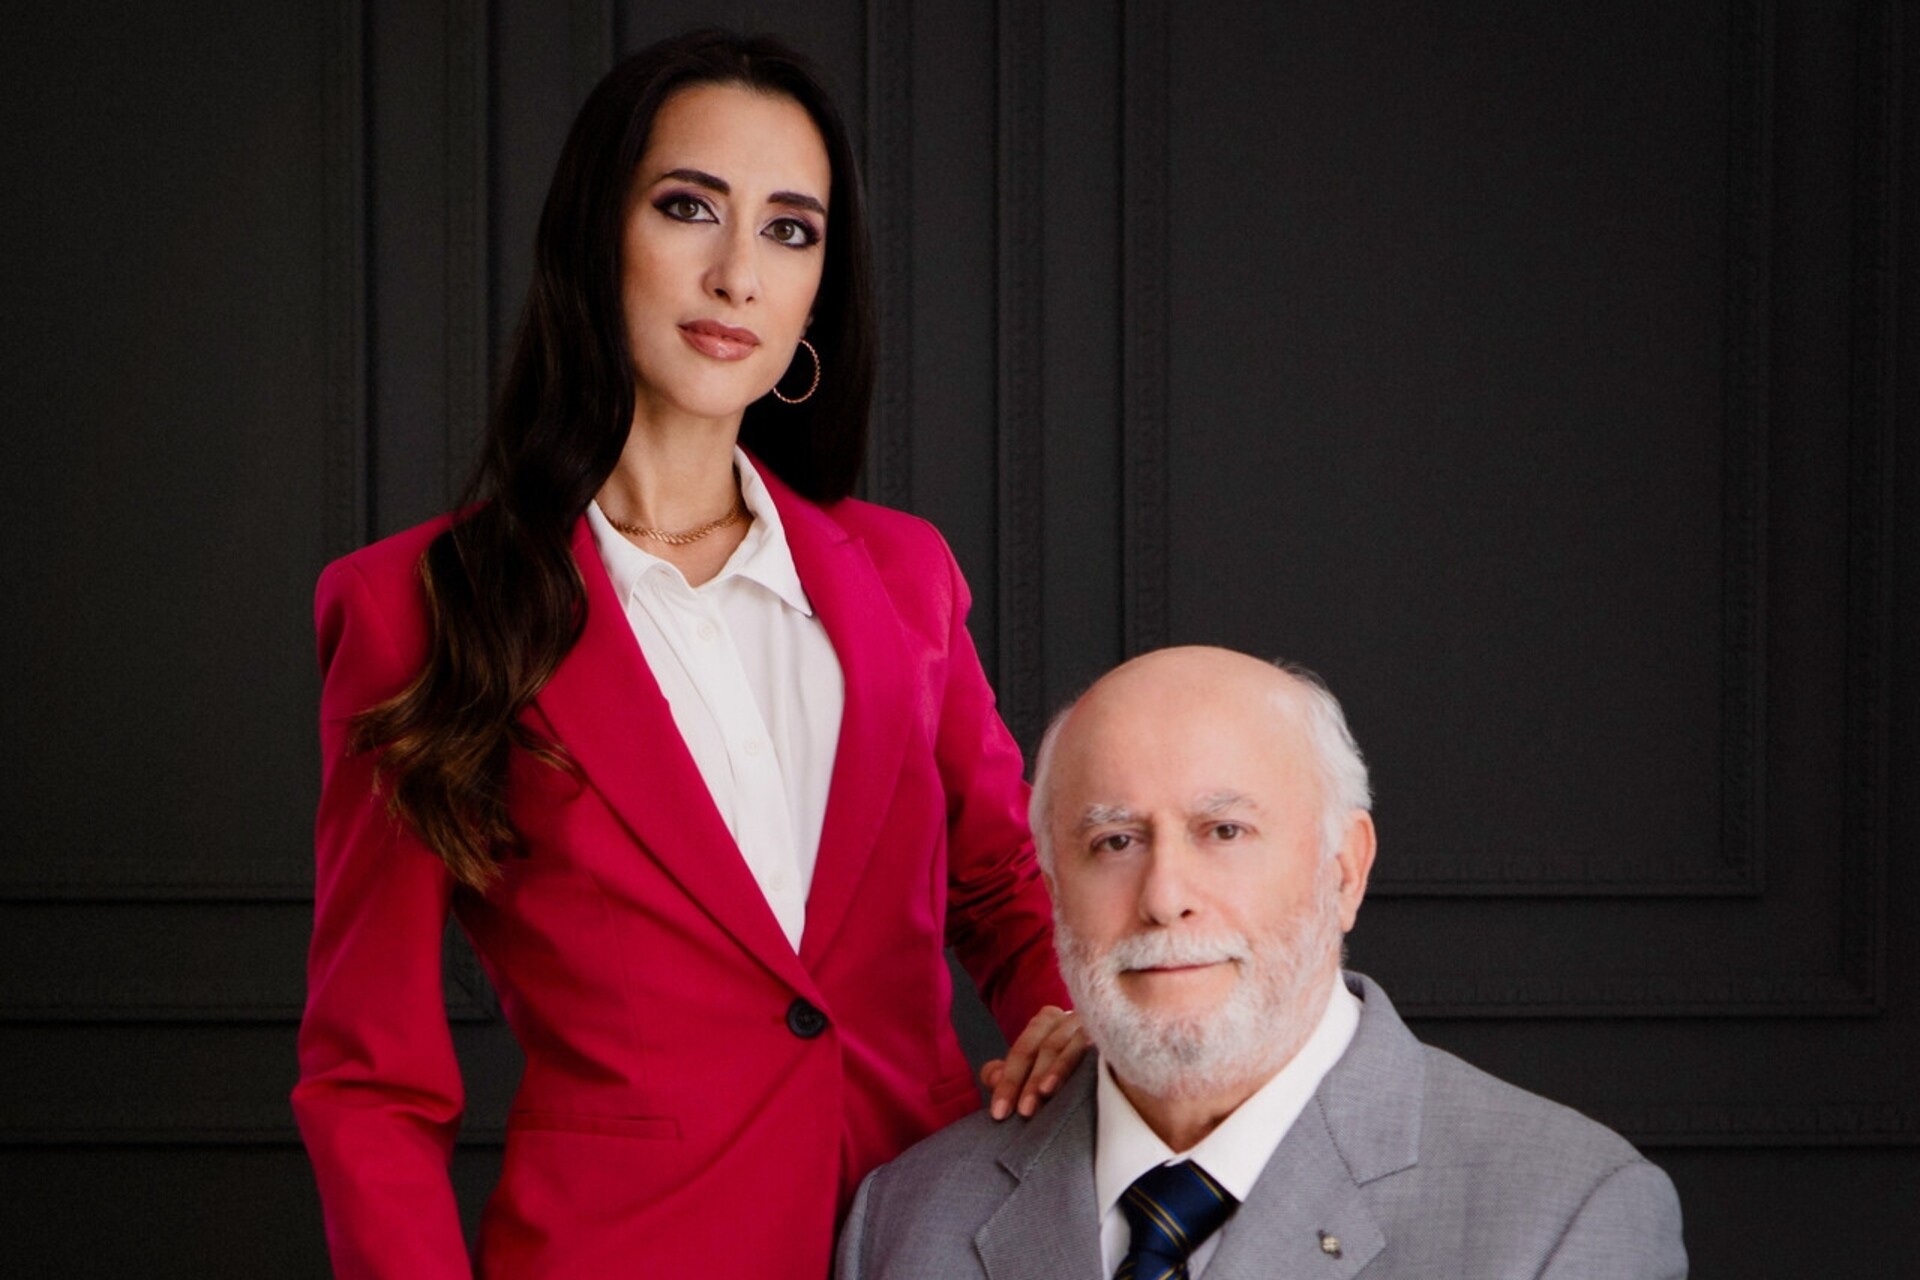 Eleonora Bafunno og hennes far Pasquale er eiere av Bafunno Group med base i Ticino